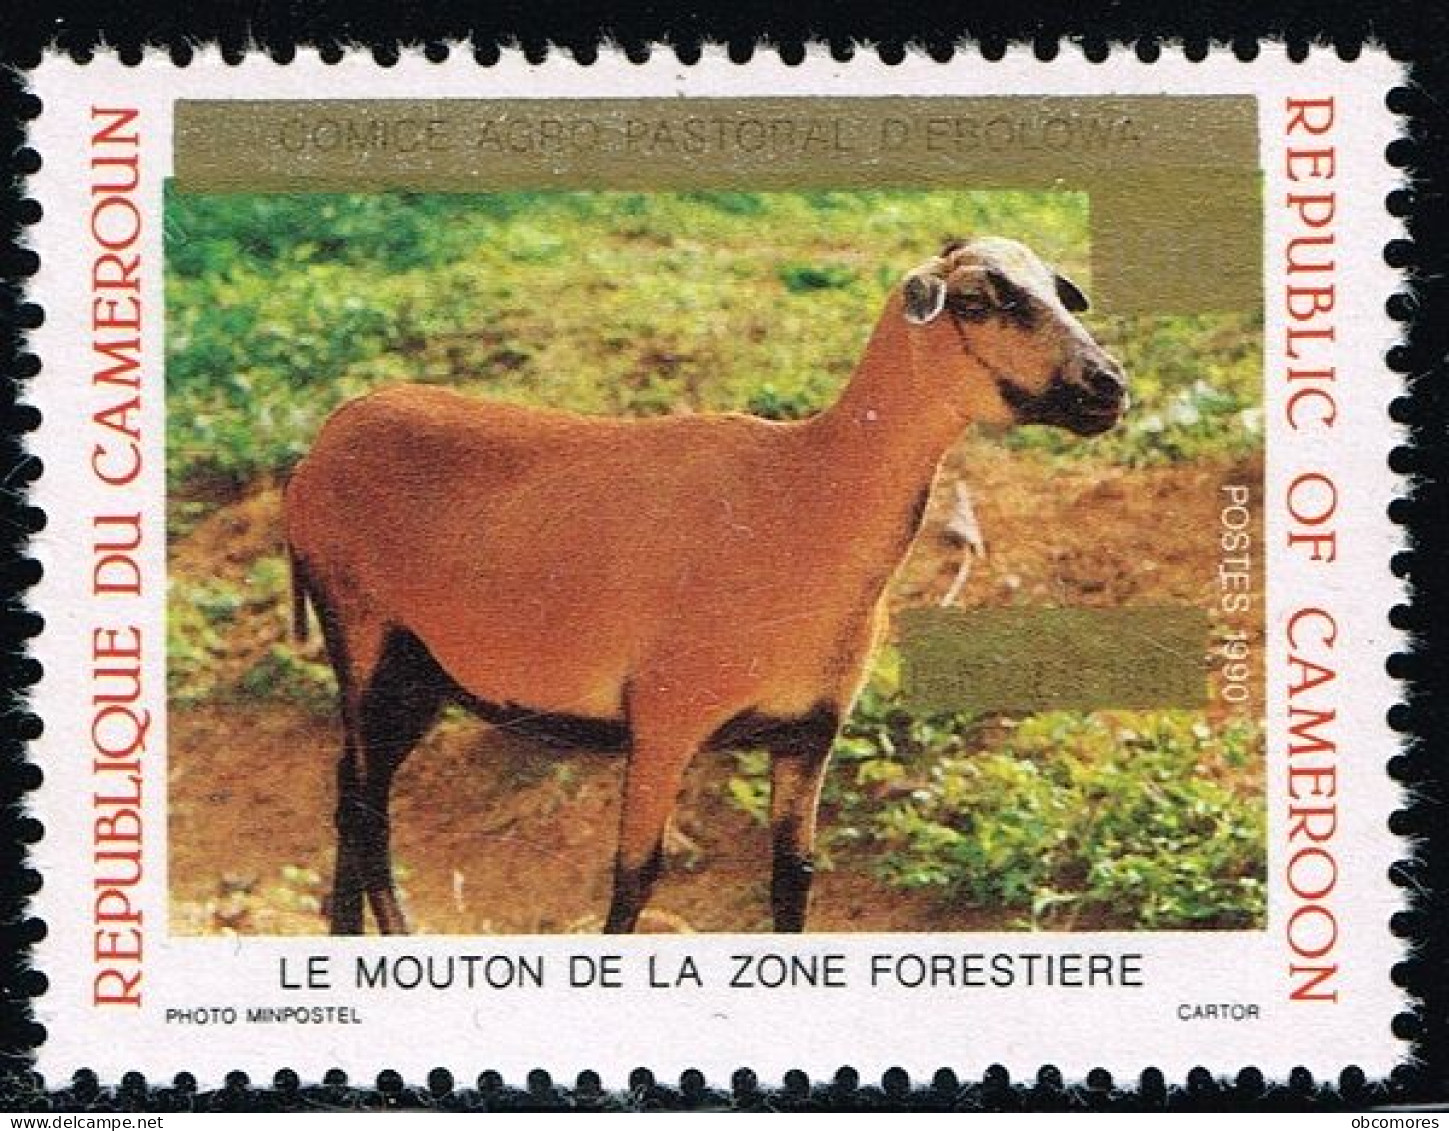 CAMEROUN Cameroon Kamerun 1993 Mouton Sheep Mi 1199 Sc 895 Overprint But Without New Value 125 F! RARE - MNH ** - Kamerun (1960-...)